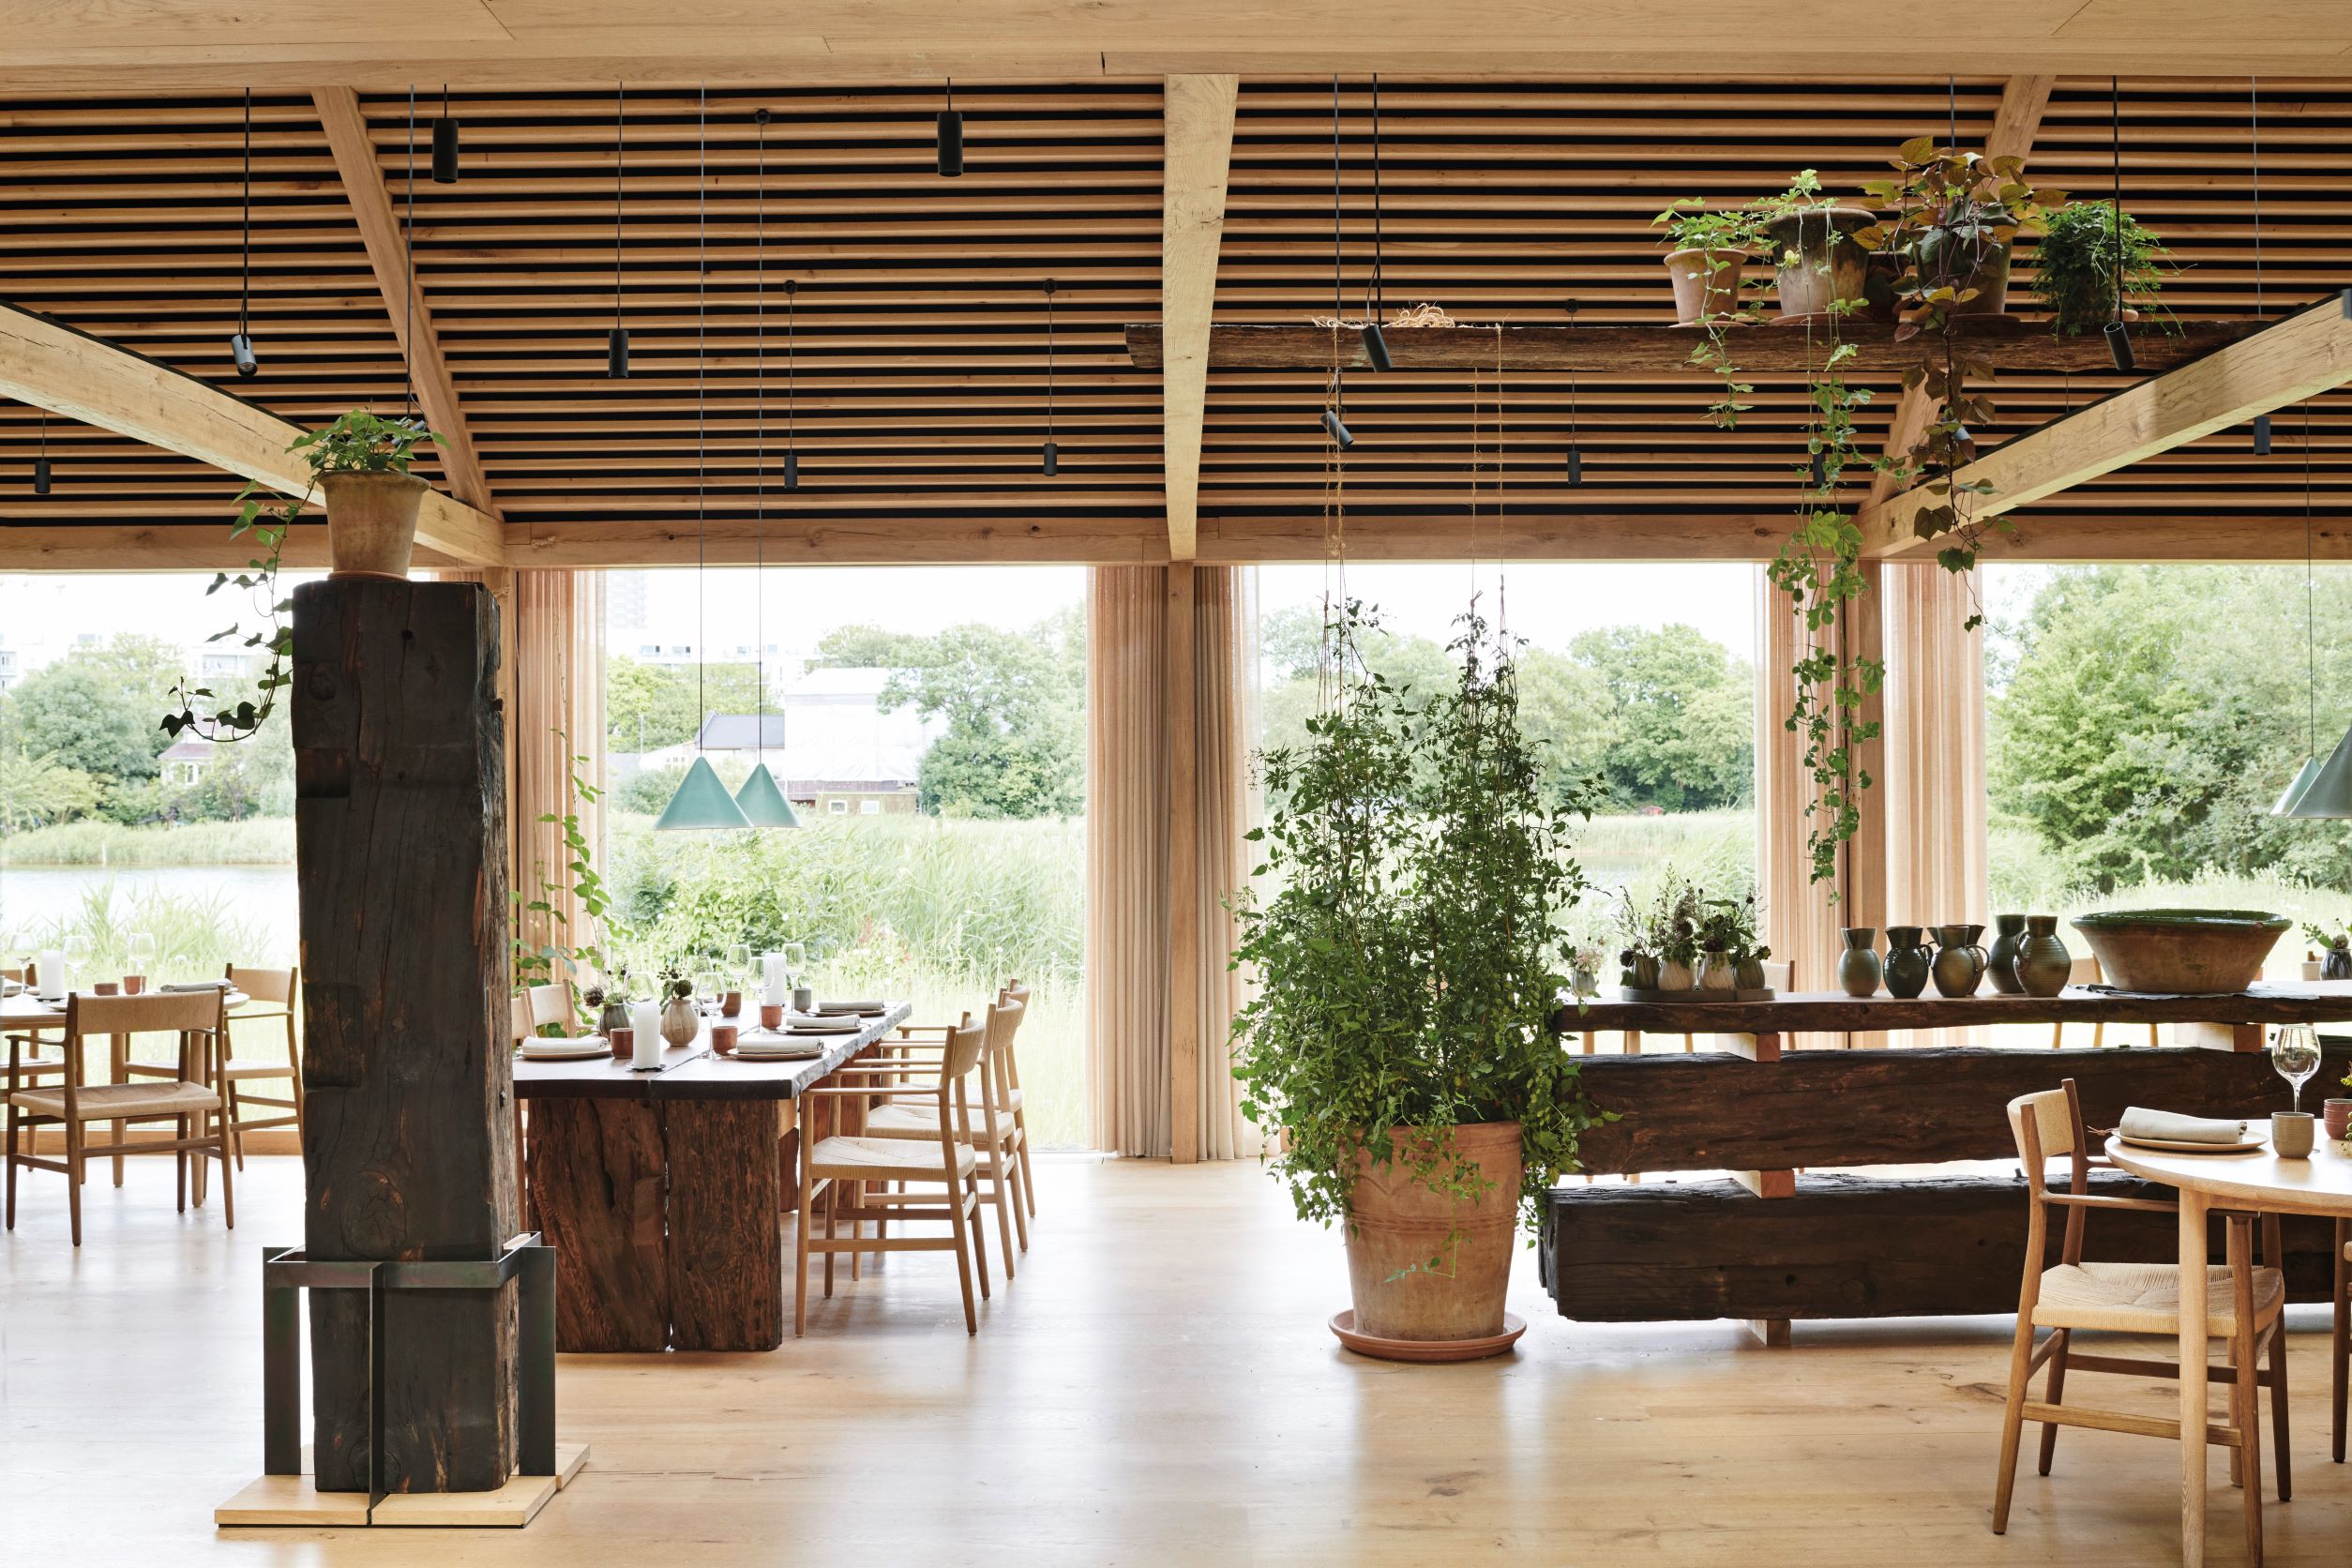 由 Studio David Thulstrup 所設計的餐廳用餐空間，以原木和大量植栽營造出自然愜意的空間氛圍。